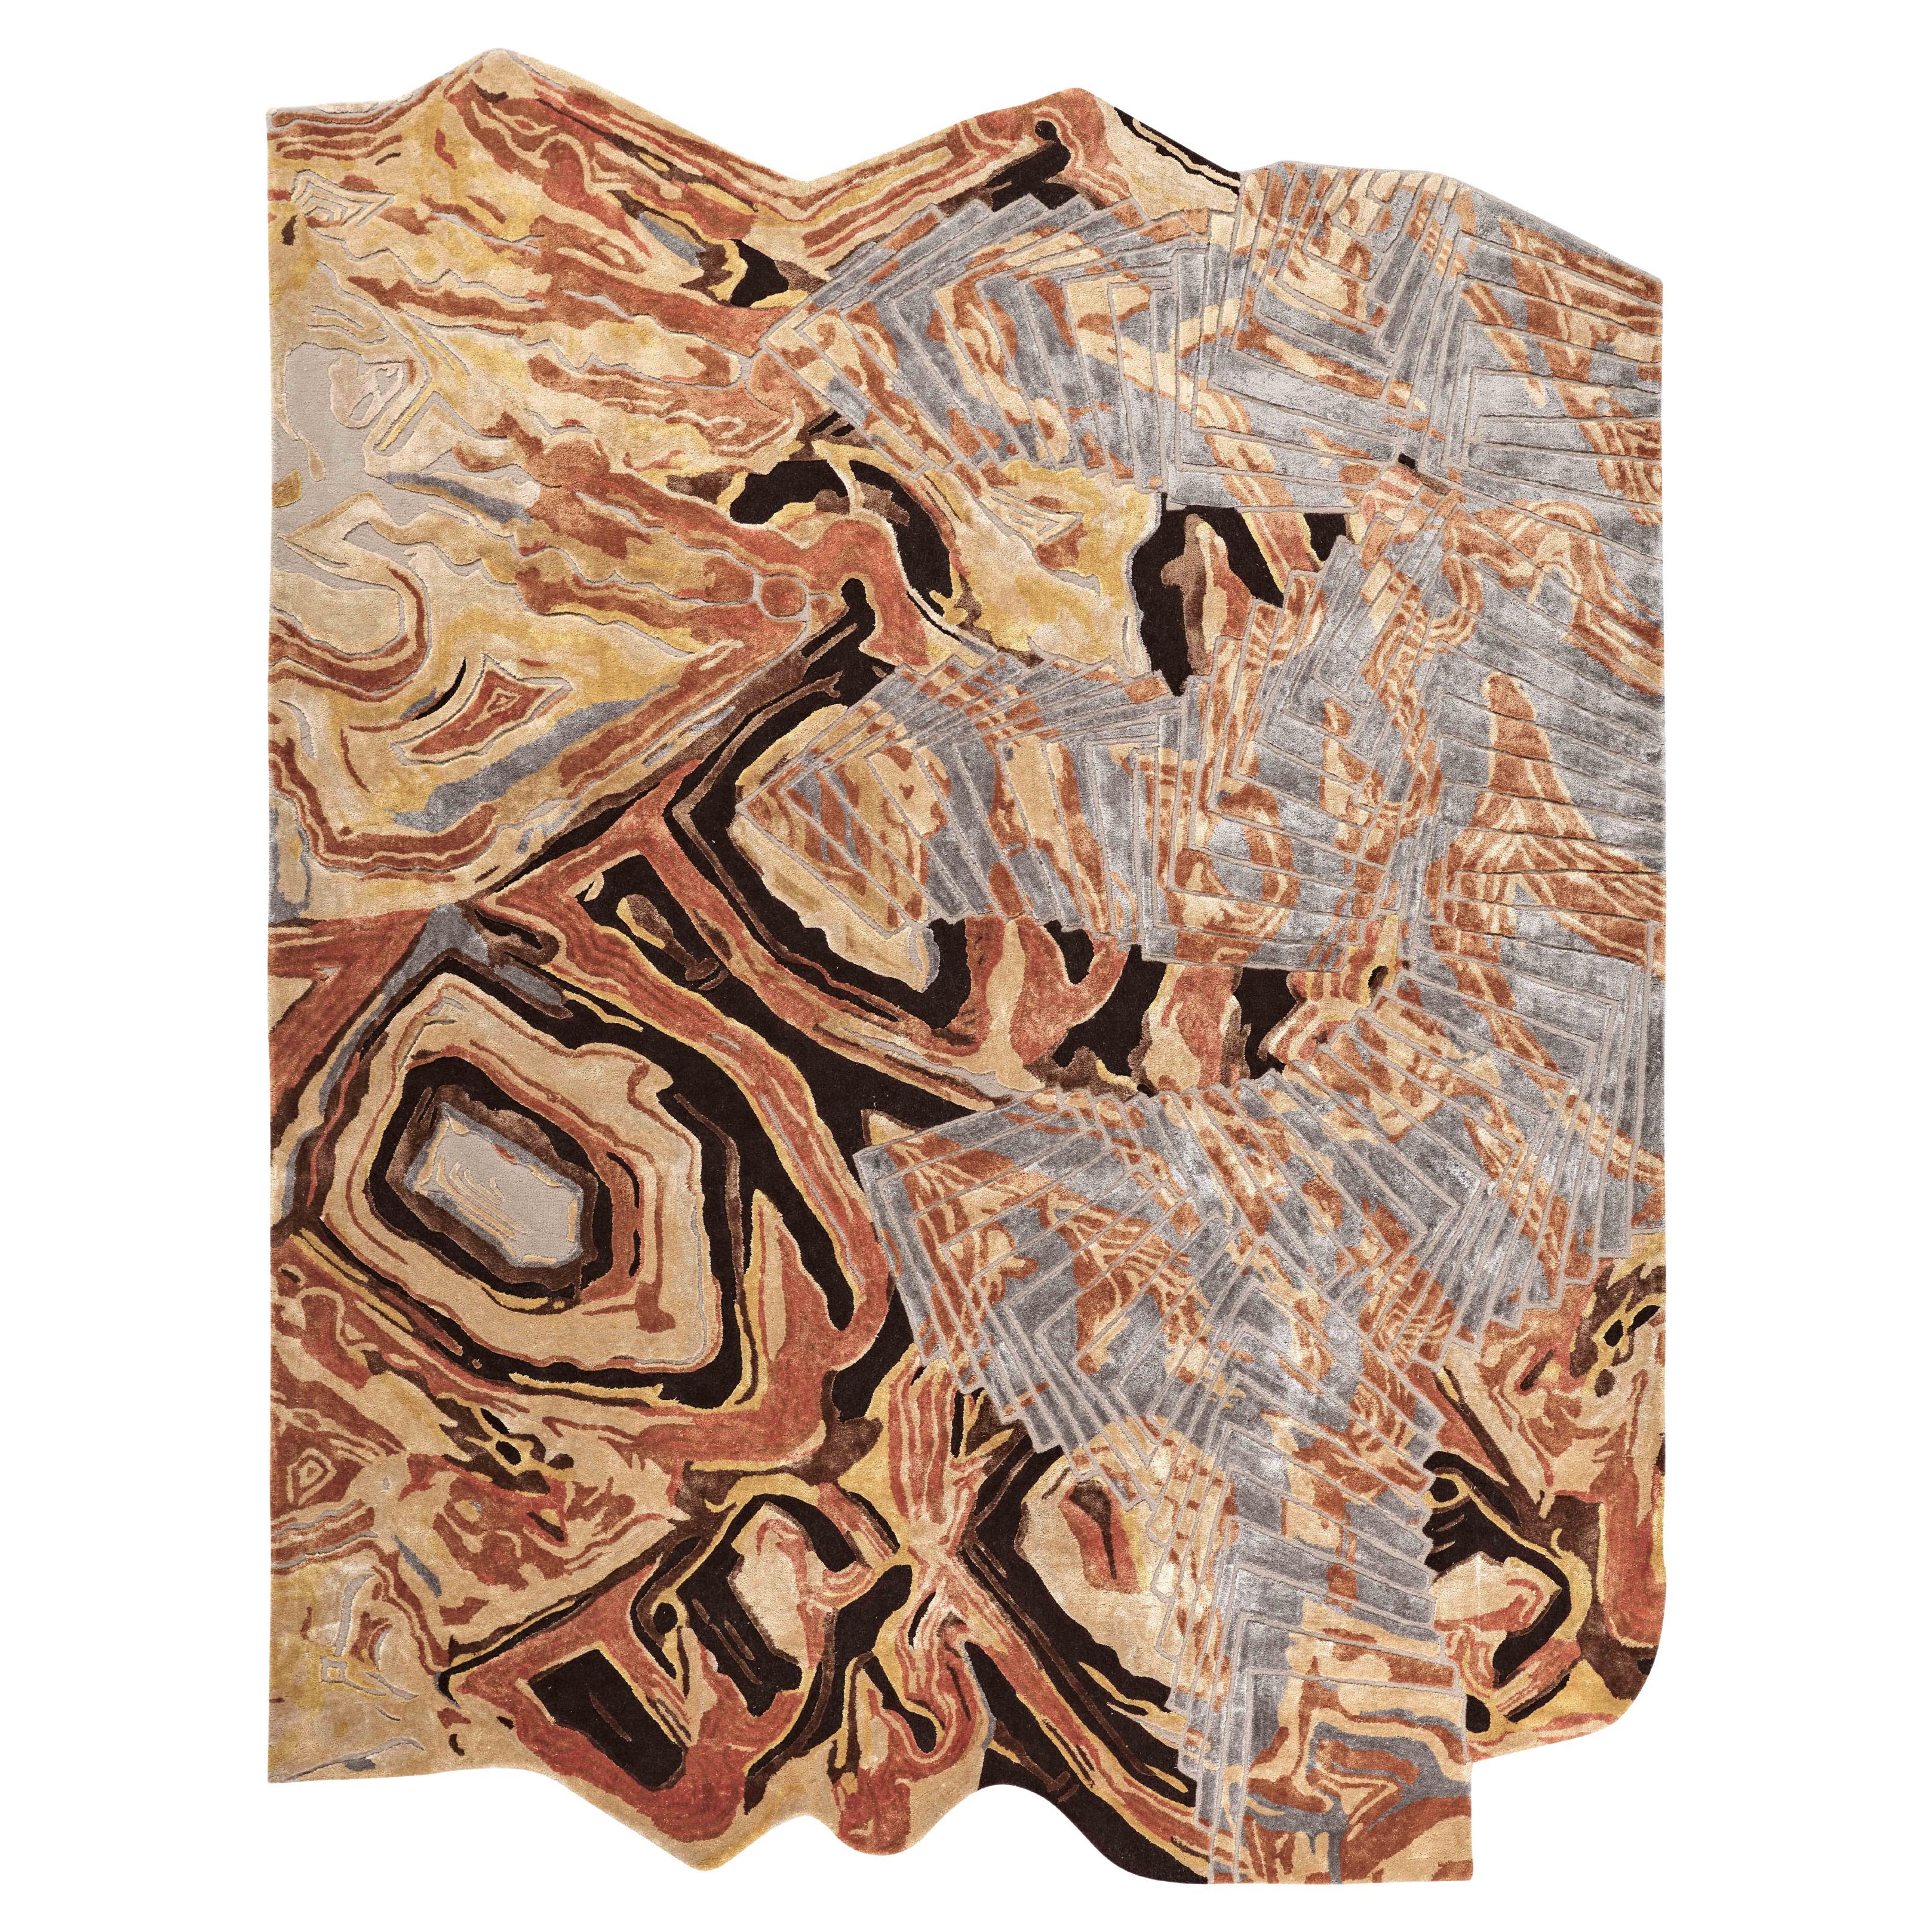 Marblore, handgetufteter moderner Teppich aus botanischer Seide und Wolle von Hand